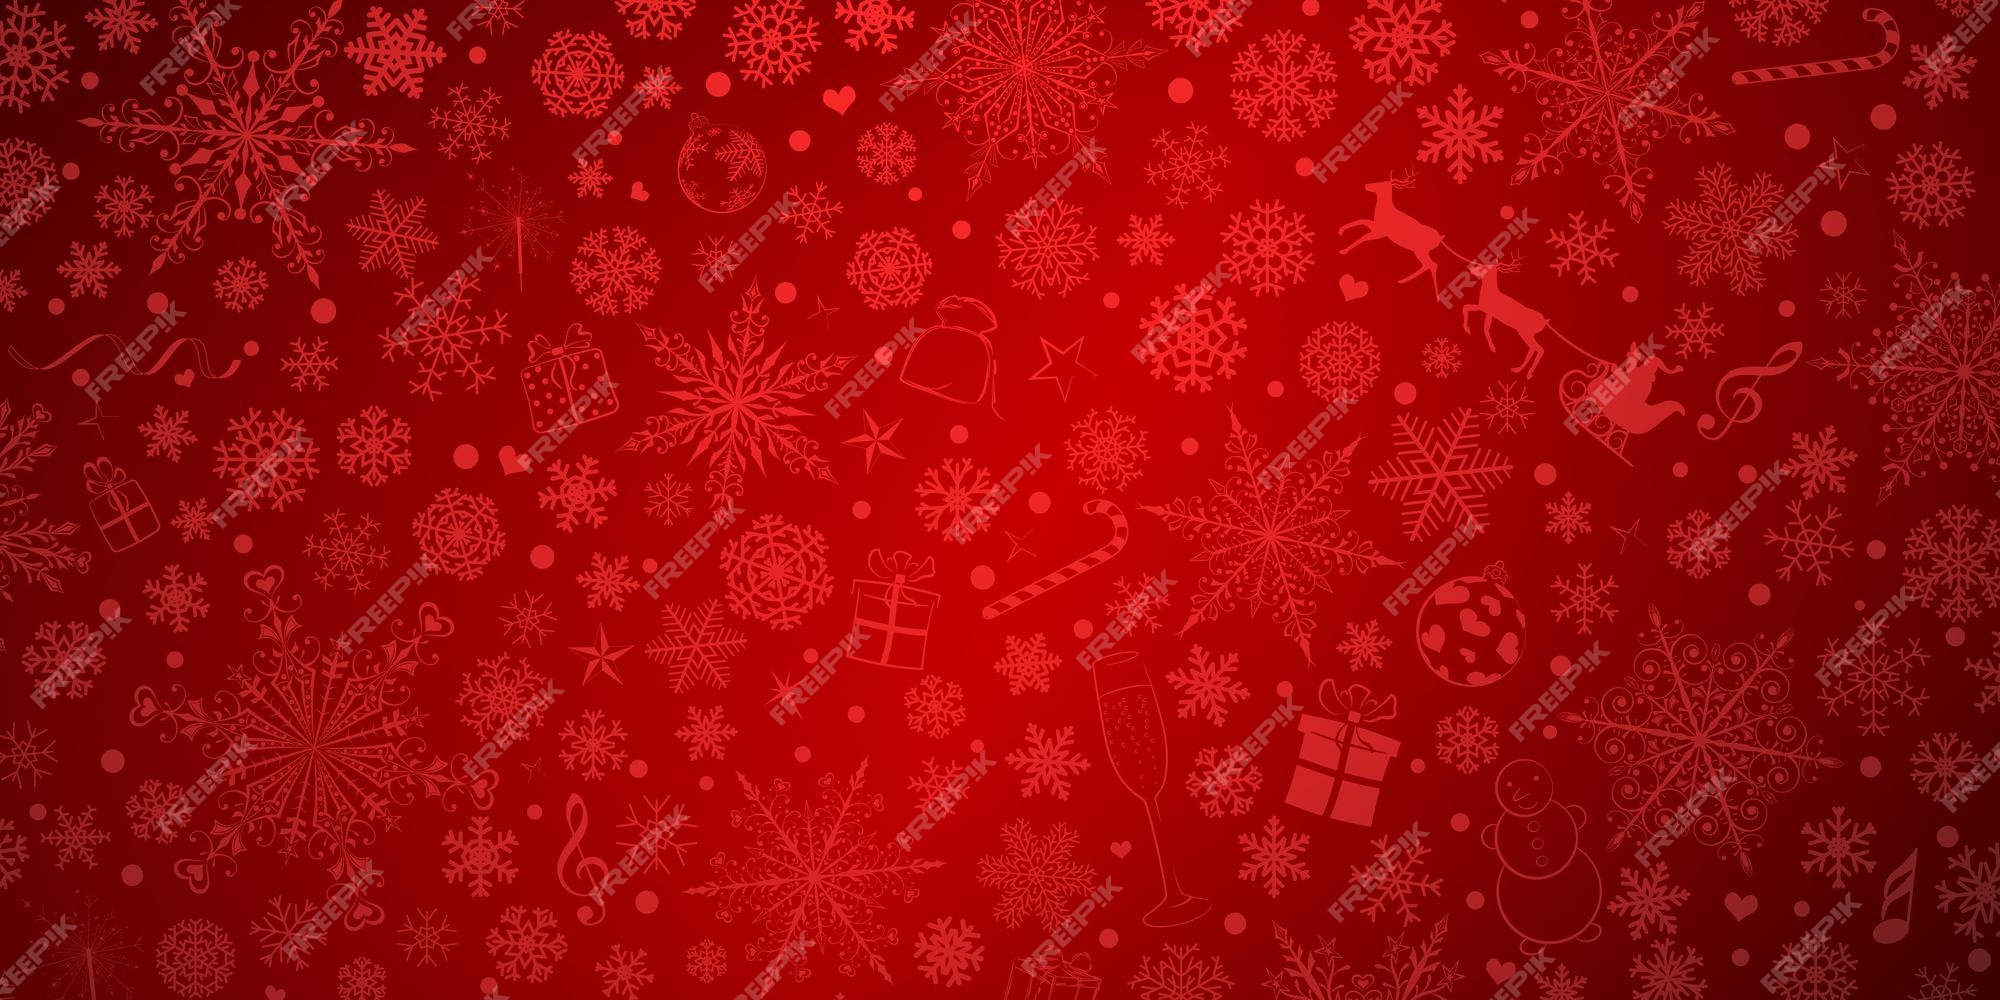 Màu đỏ là màu sắc truyền thống của mùa lễ hội Giáng Sinh. Hình nền đỏ Giáng Sinh sẽ mang lại cho bạn cảm giác ấm áp, hạnh phúc và ngập tràn niềm vui trong mùa Giáng Sinh này. Hãy chiêm ngưỡng những hình nền đỏ xinh đẹp và tạo nên không gian thật lung linh cho mùa lễ hội truyền thống này.